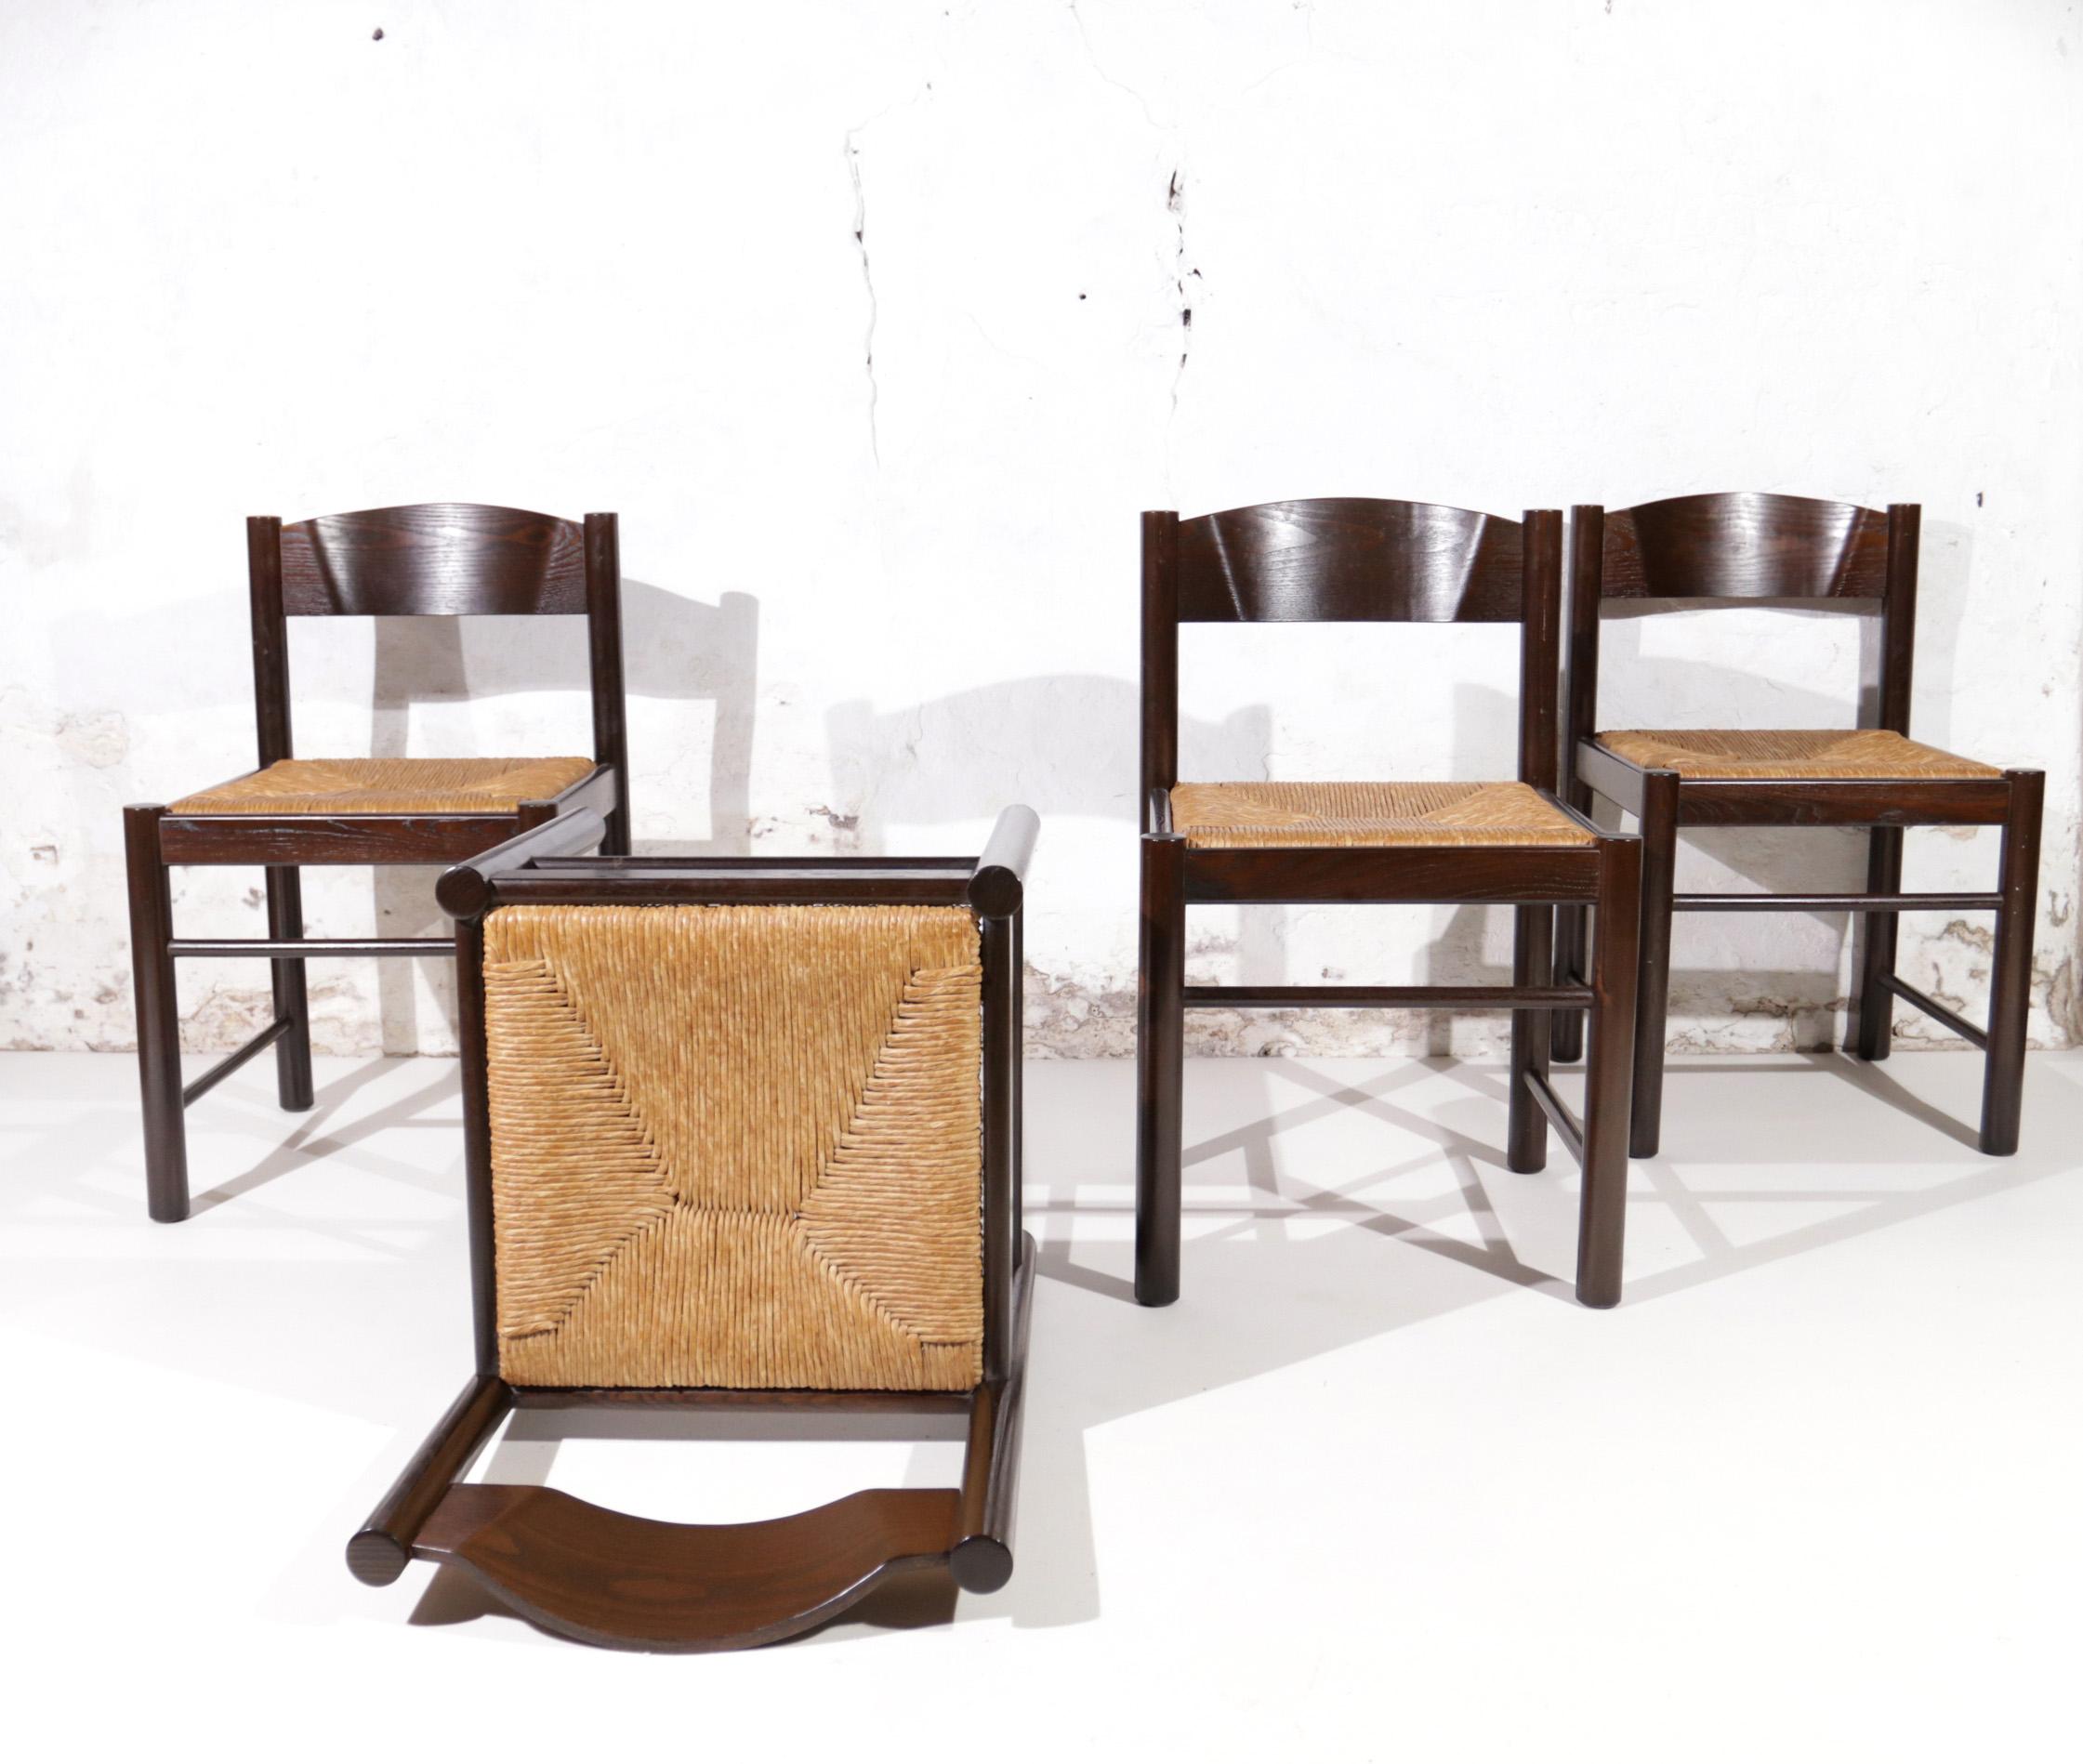 Schöner Satz von 4 Esszimmerstühlen in der Art von Charlotte Perriand.
Massive, dunkelbraun lackierte Holzstühle mit Sitzflächen aus Schilfrohr oder Binsen.
